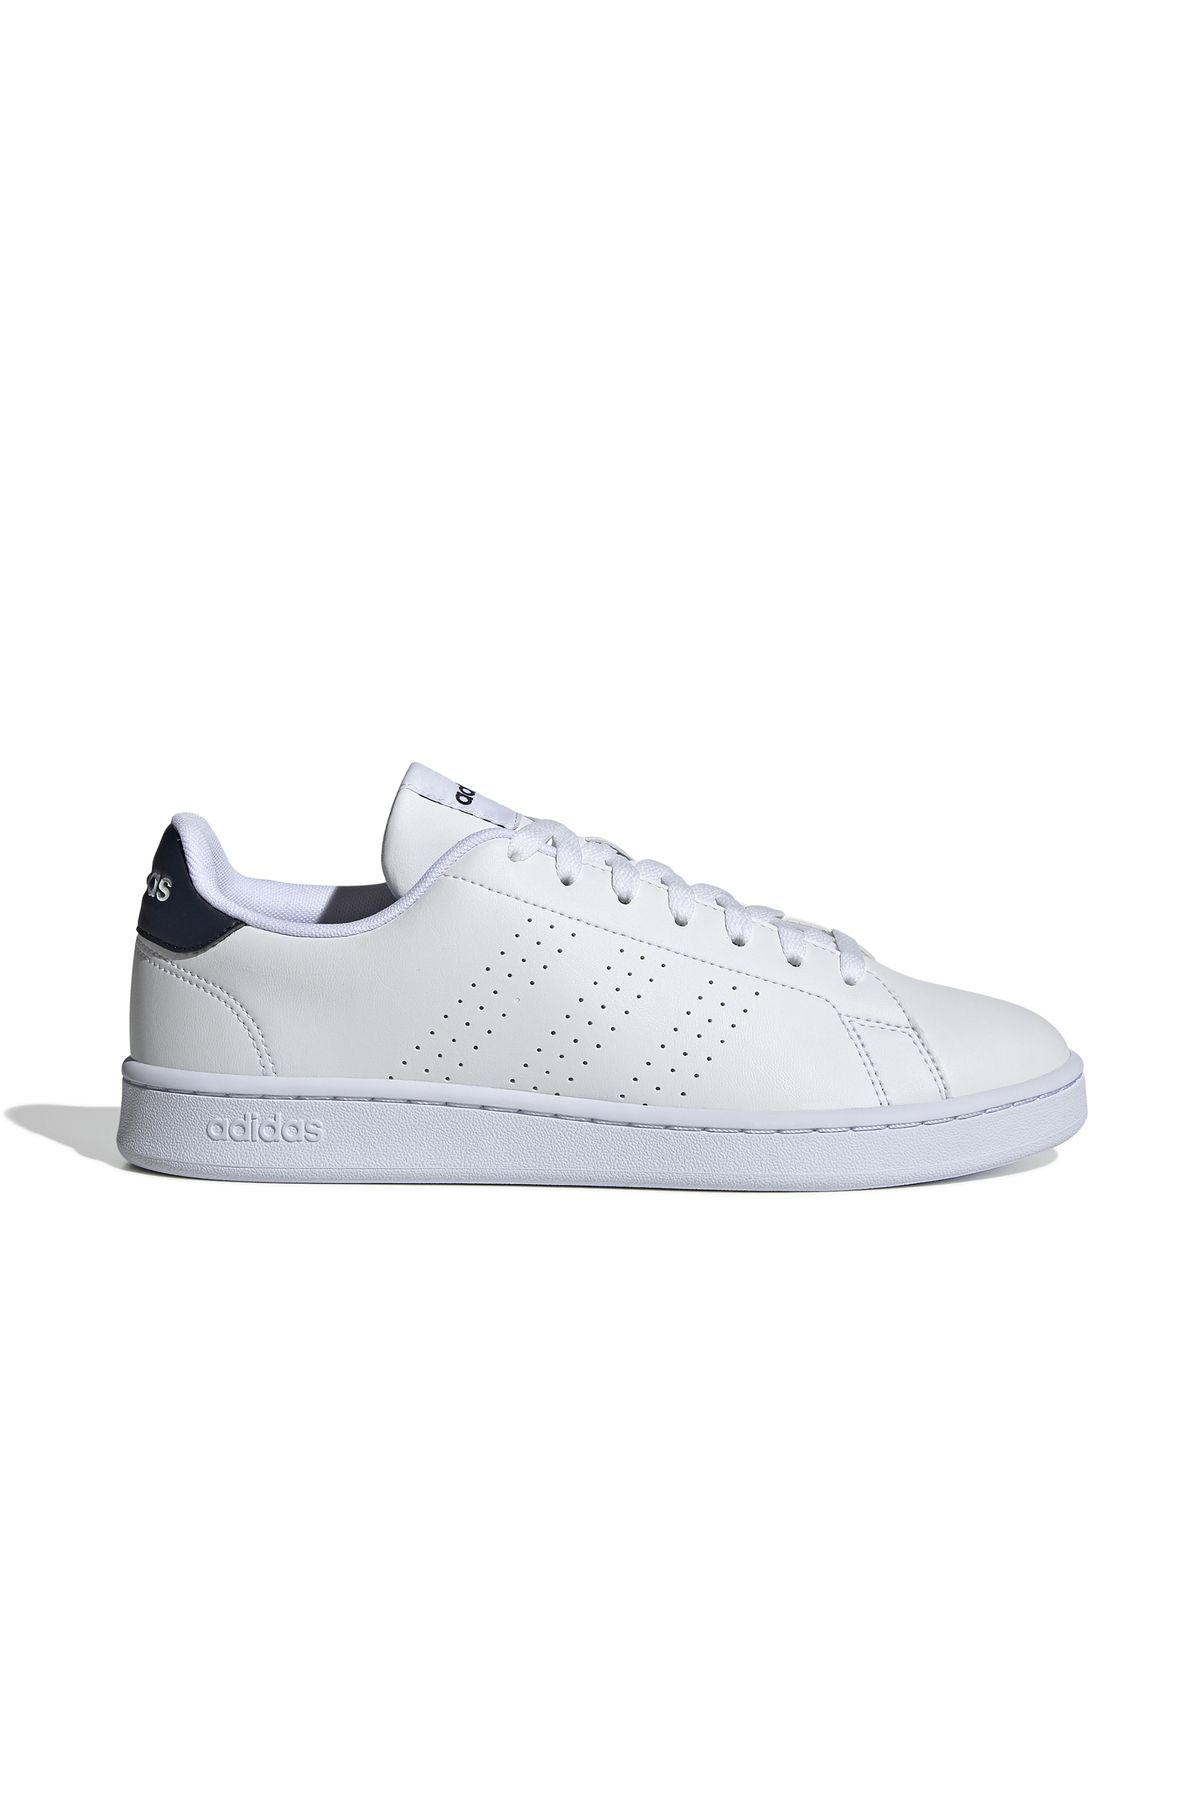 adidas Advantage Günlük Yürüyüş Ayakkabı Sneaker Beyaz